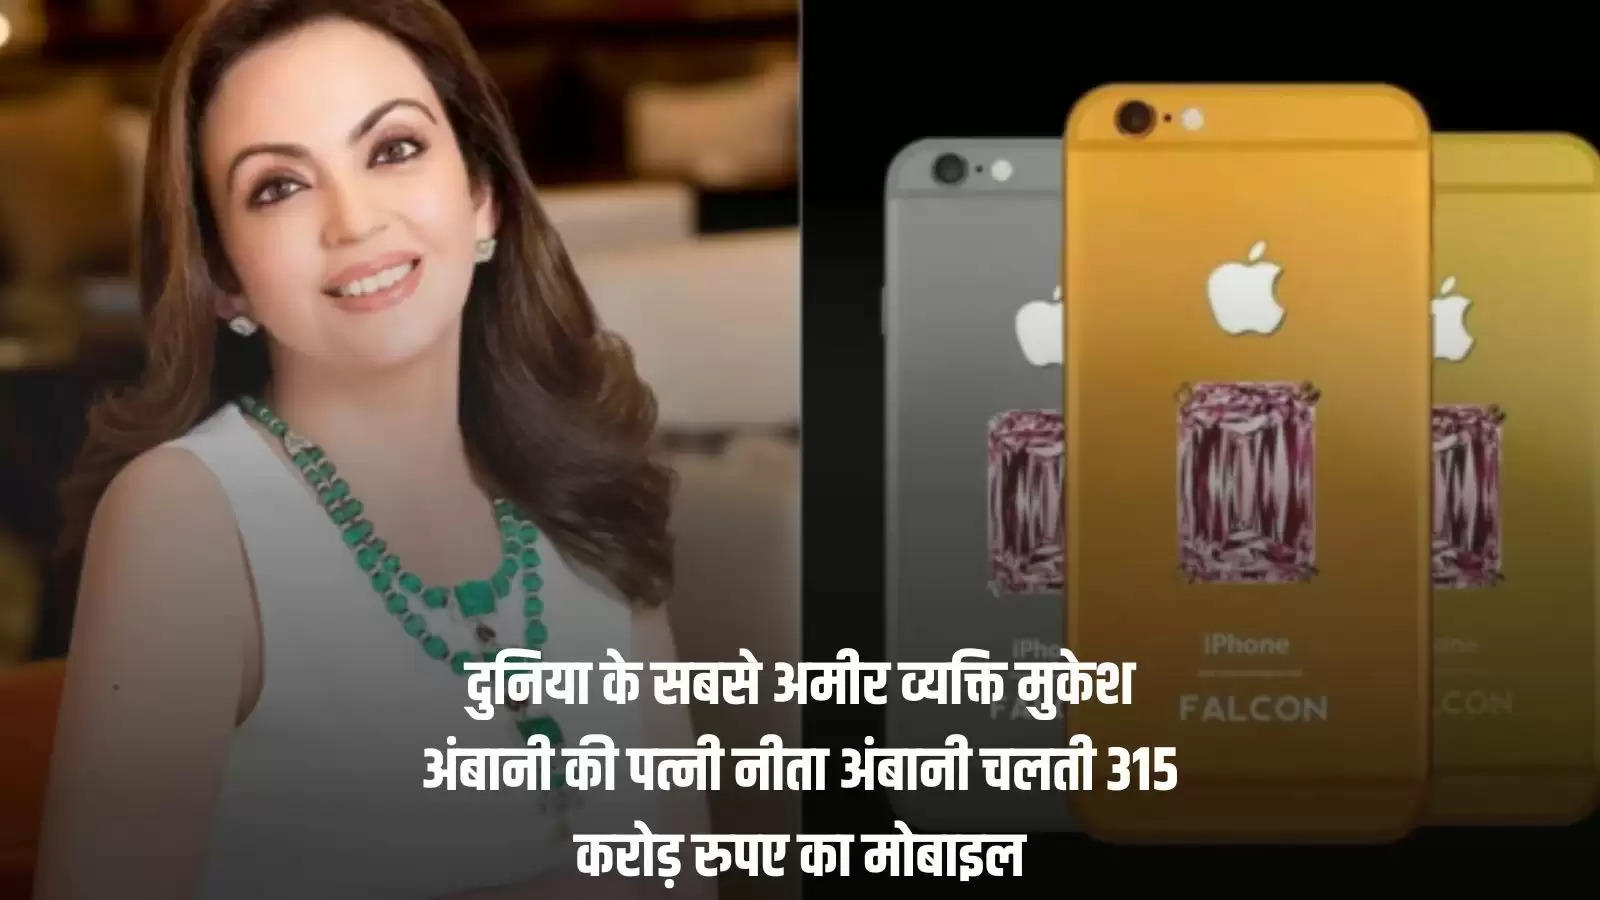 दुनिया के सबसे अमीर व्यक्ति मुकेश अंबानी की पत्नी नीता अंबानी चलती 315 करोड़ रुपए का मोबाइल